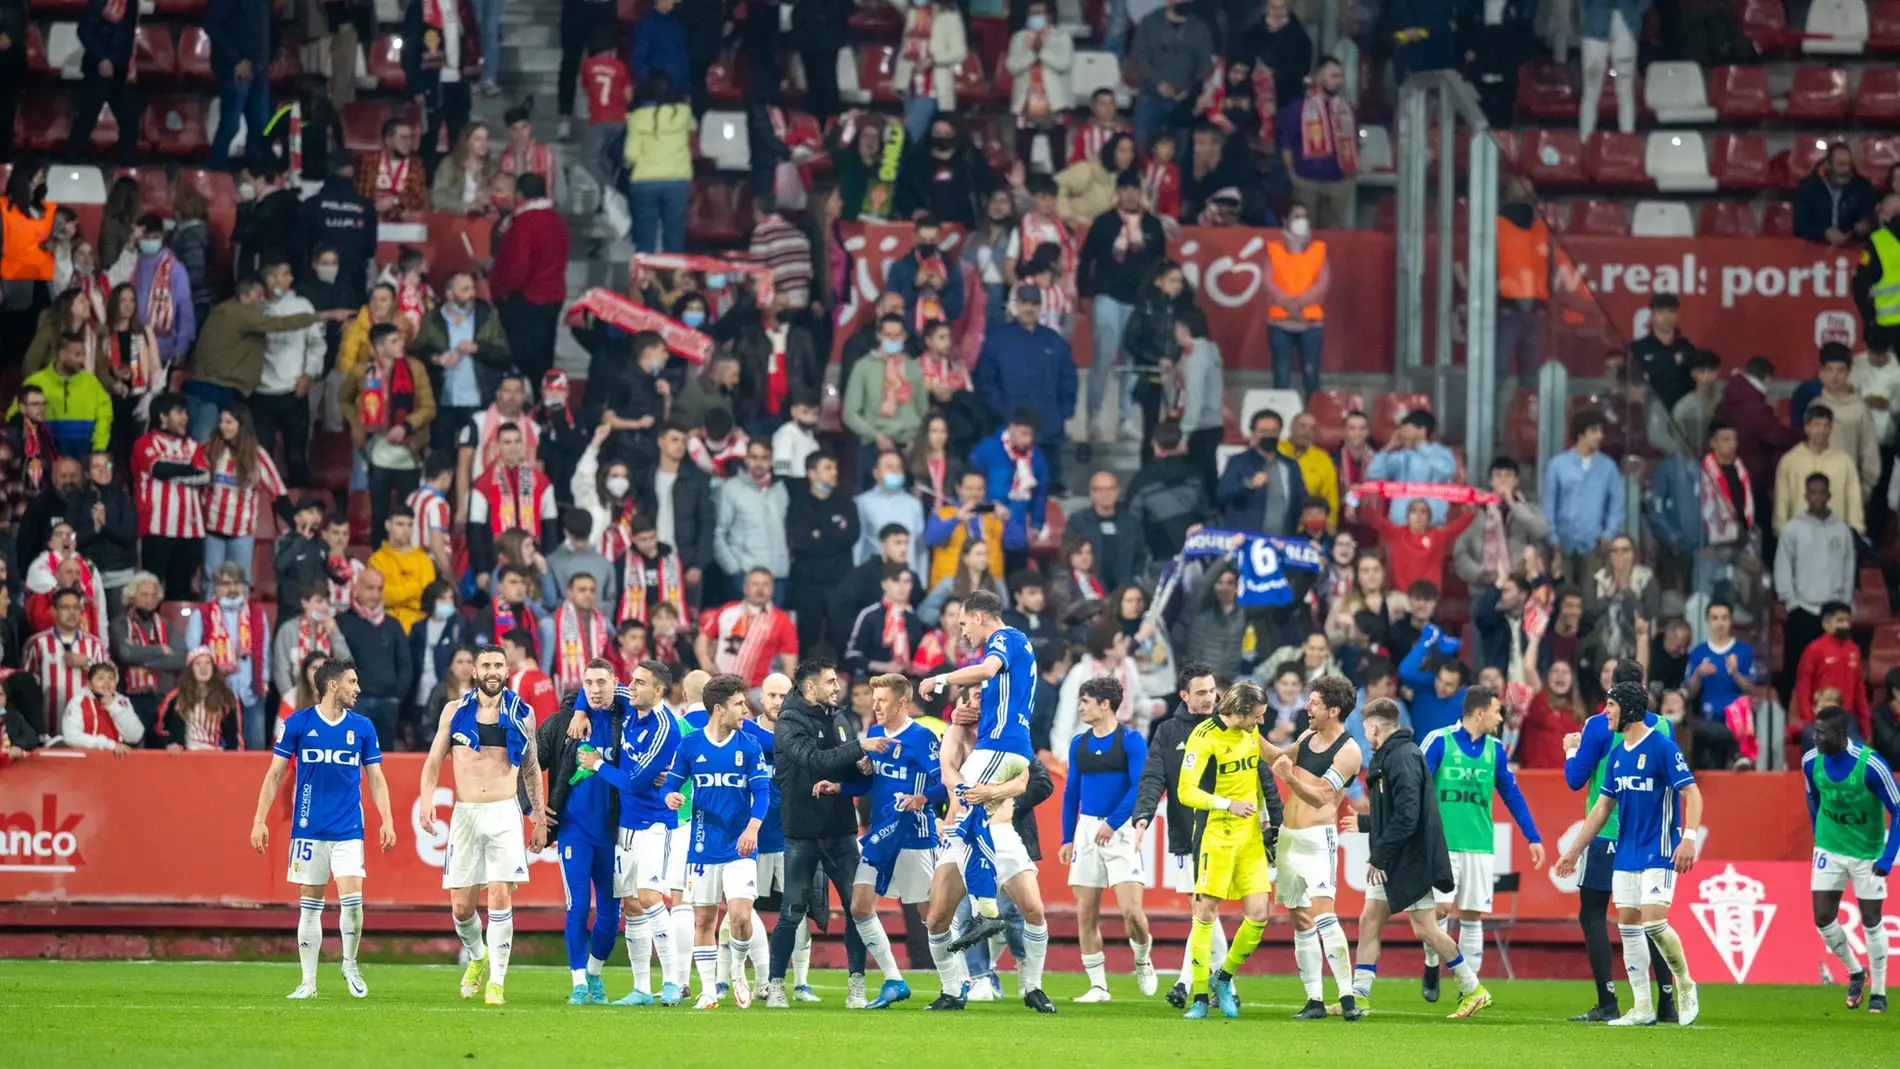 Los jugadores del Real Oviedo, al término del partido en El Molinon